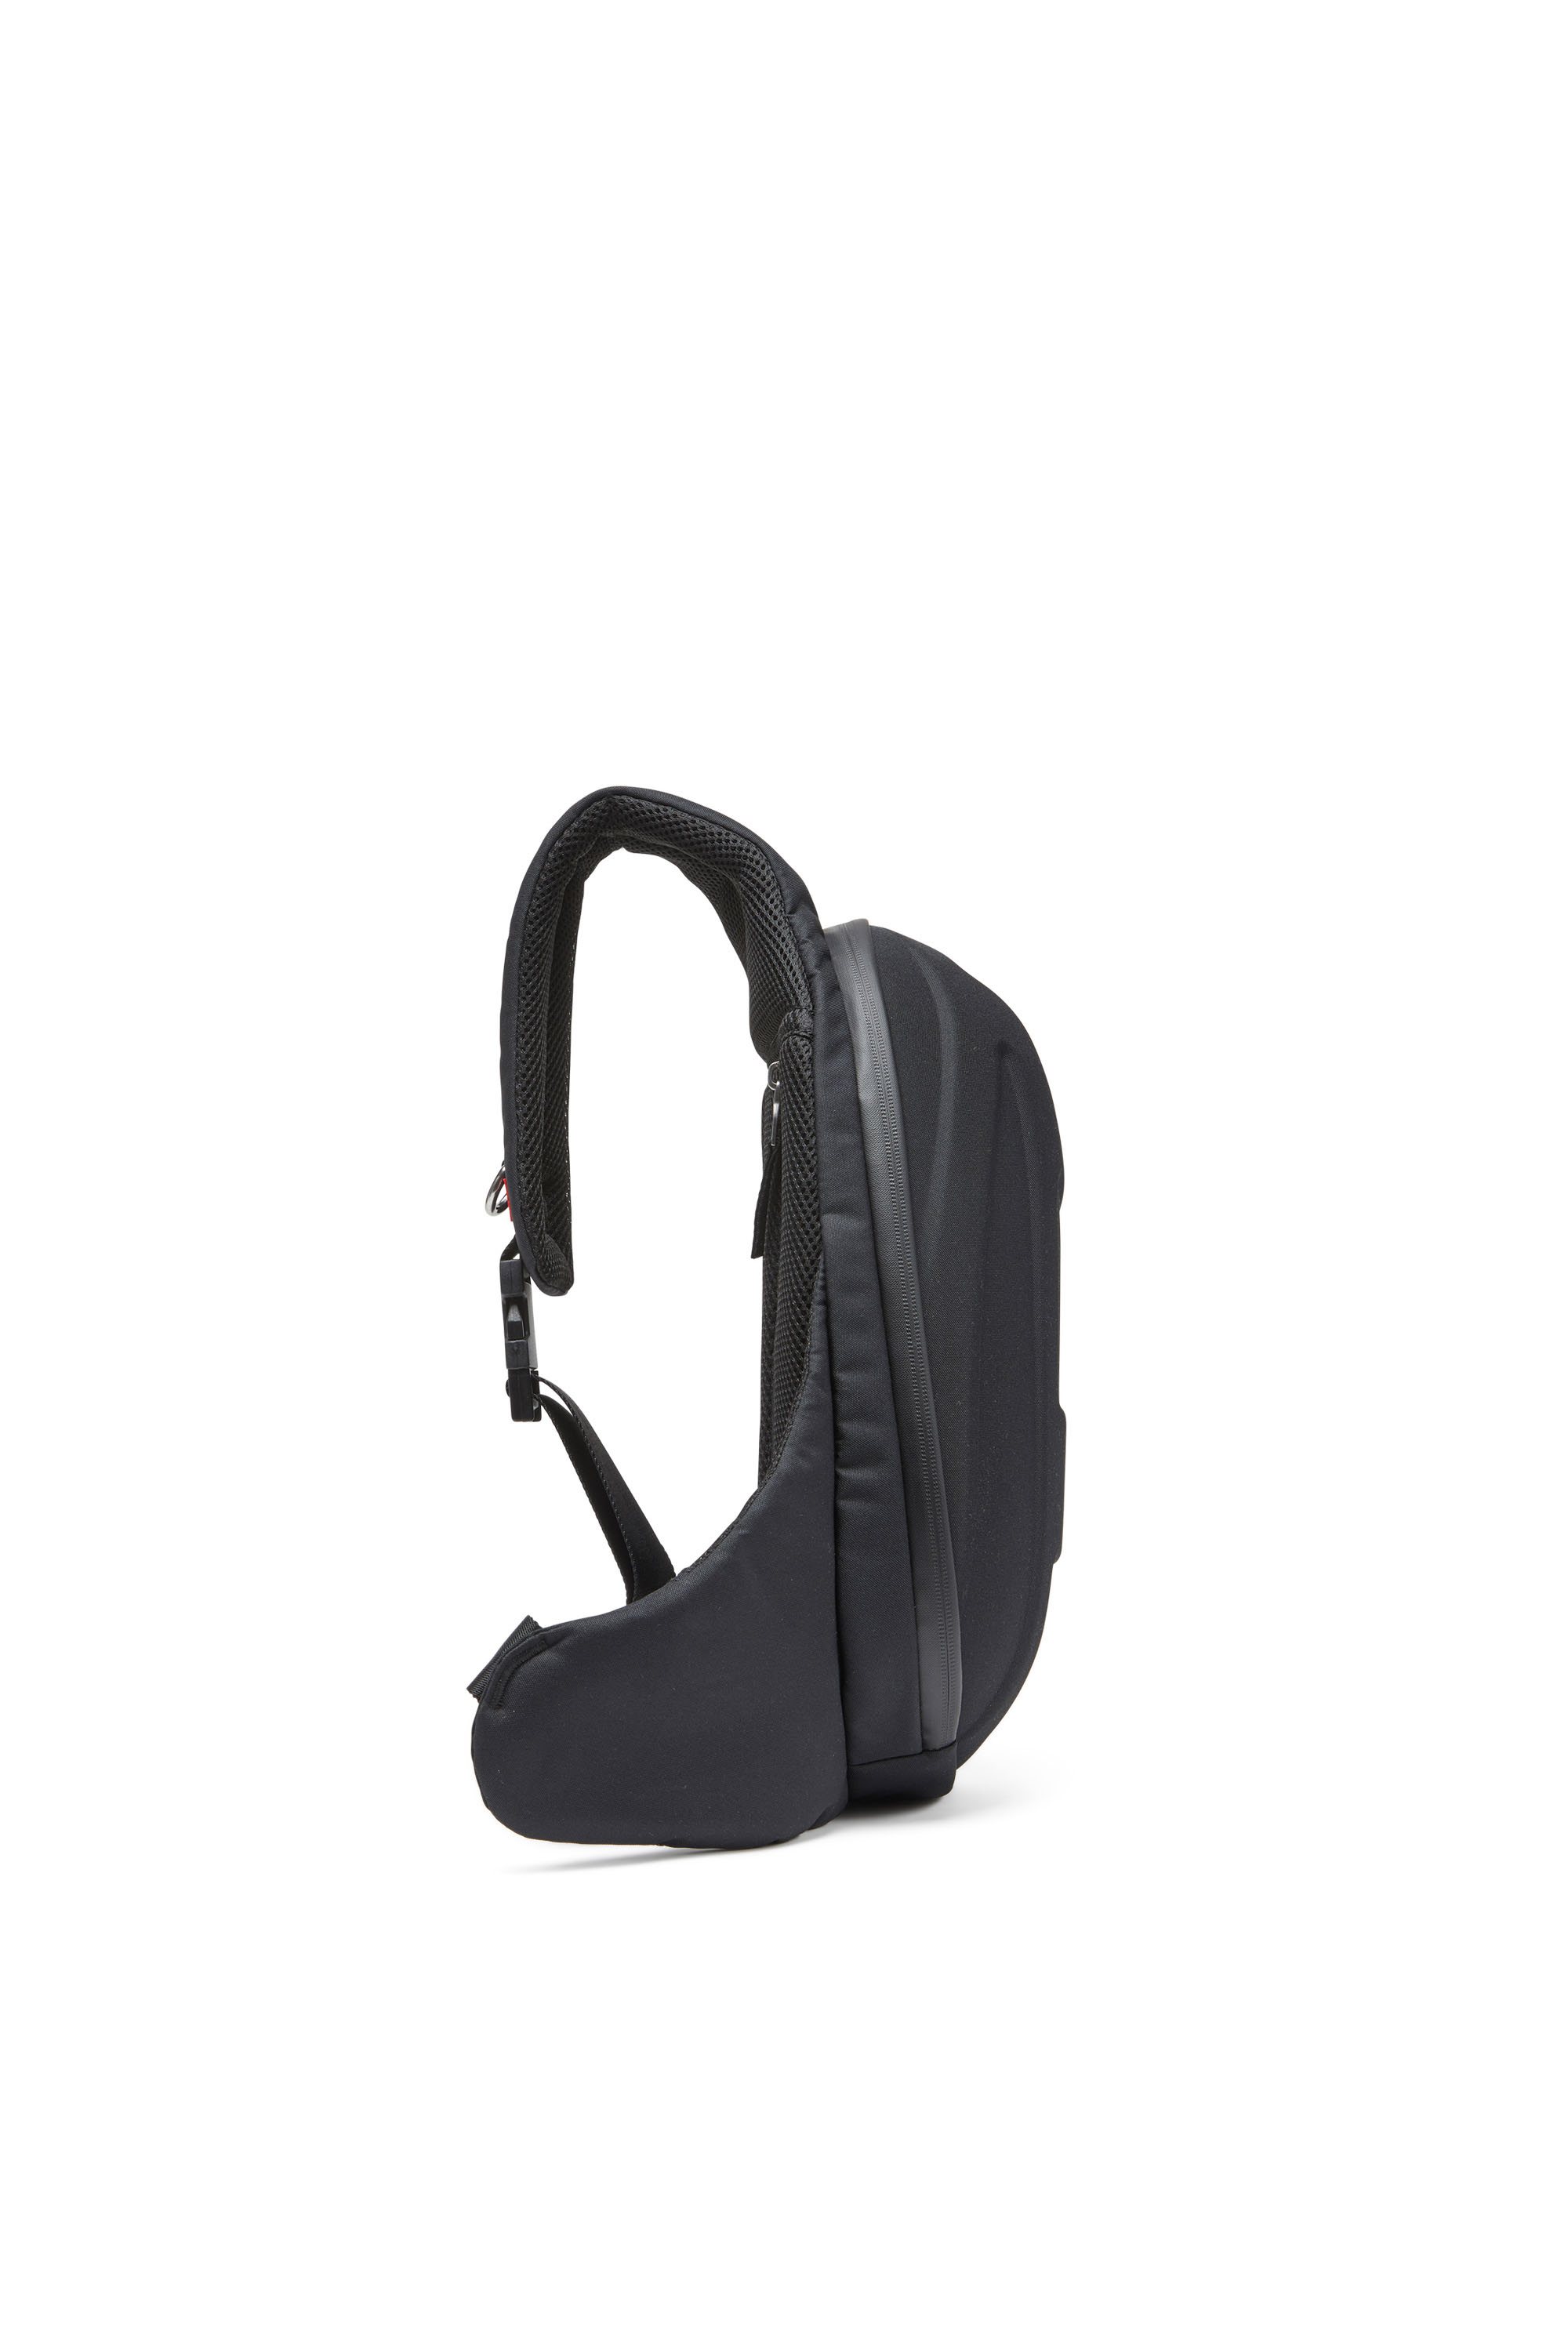 Diesel - 1DR-POD SLING BAG, Man 1DR-Pod-Hard shell sling bag in Black - Image 3